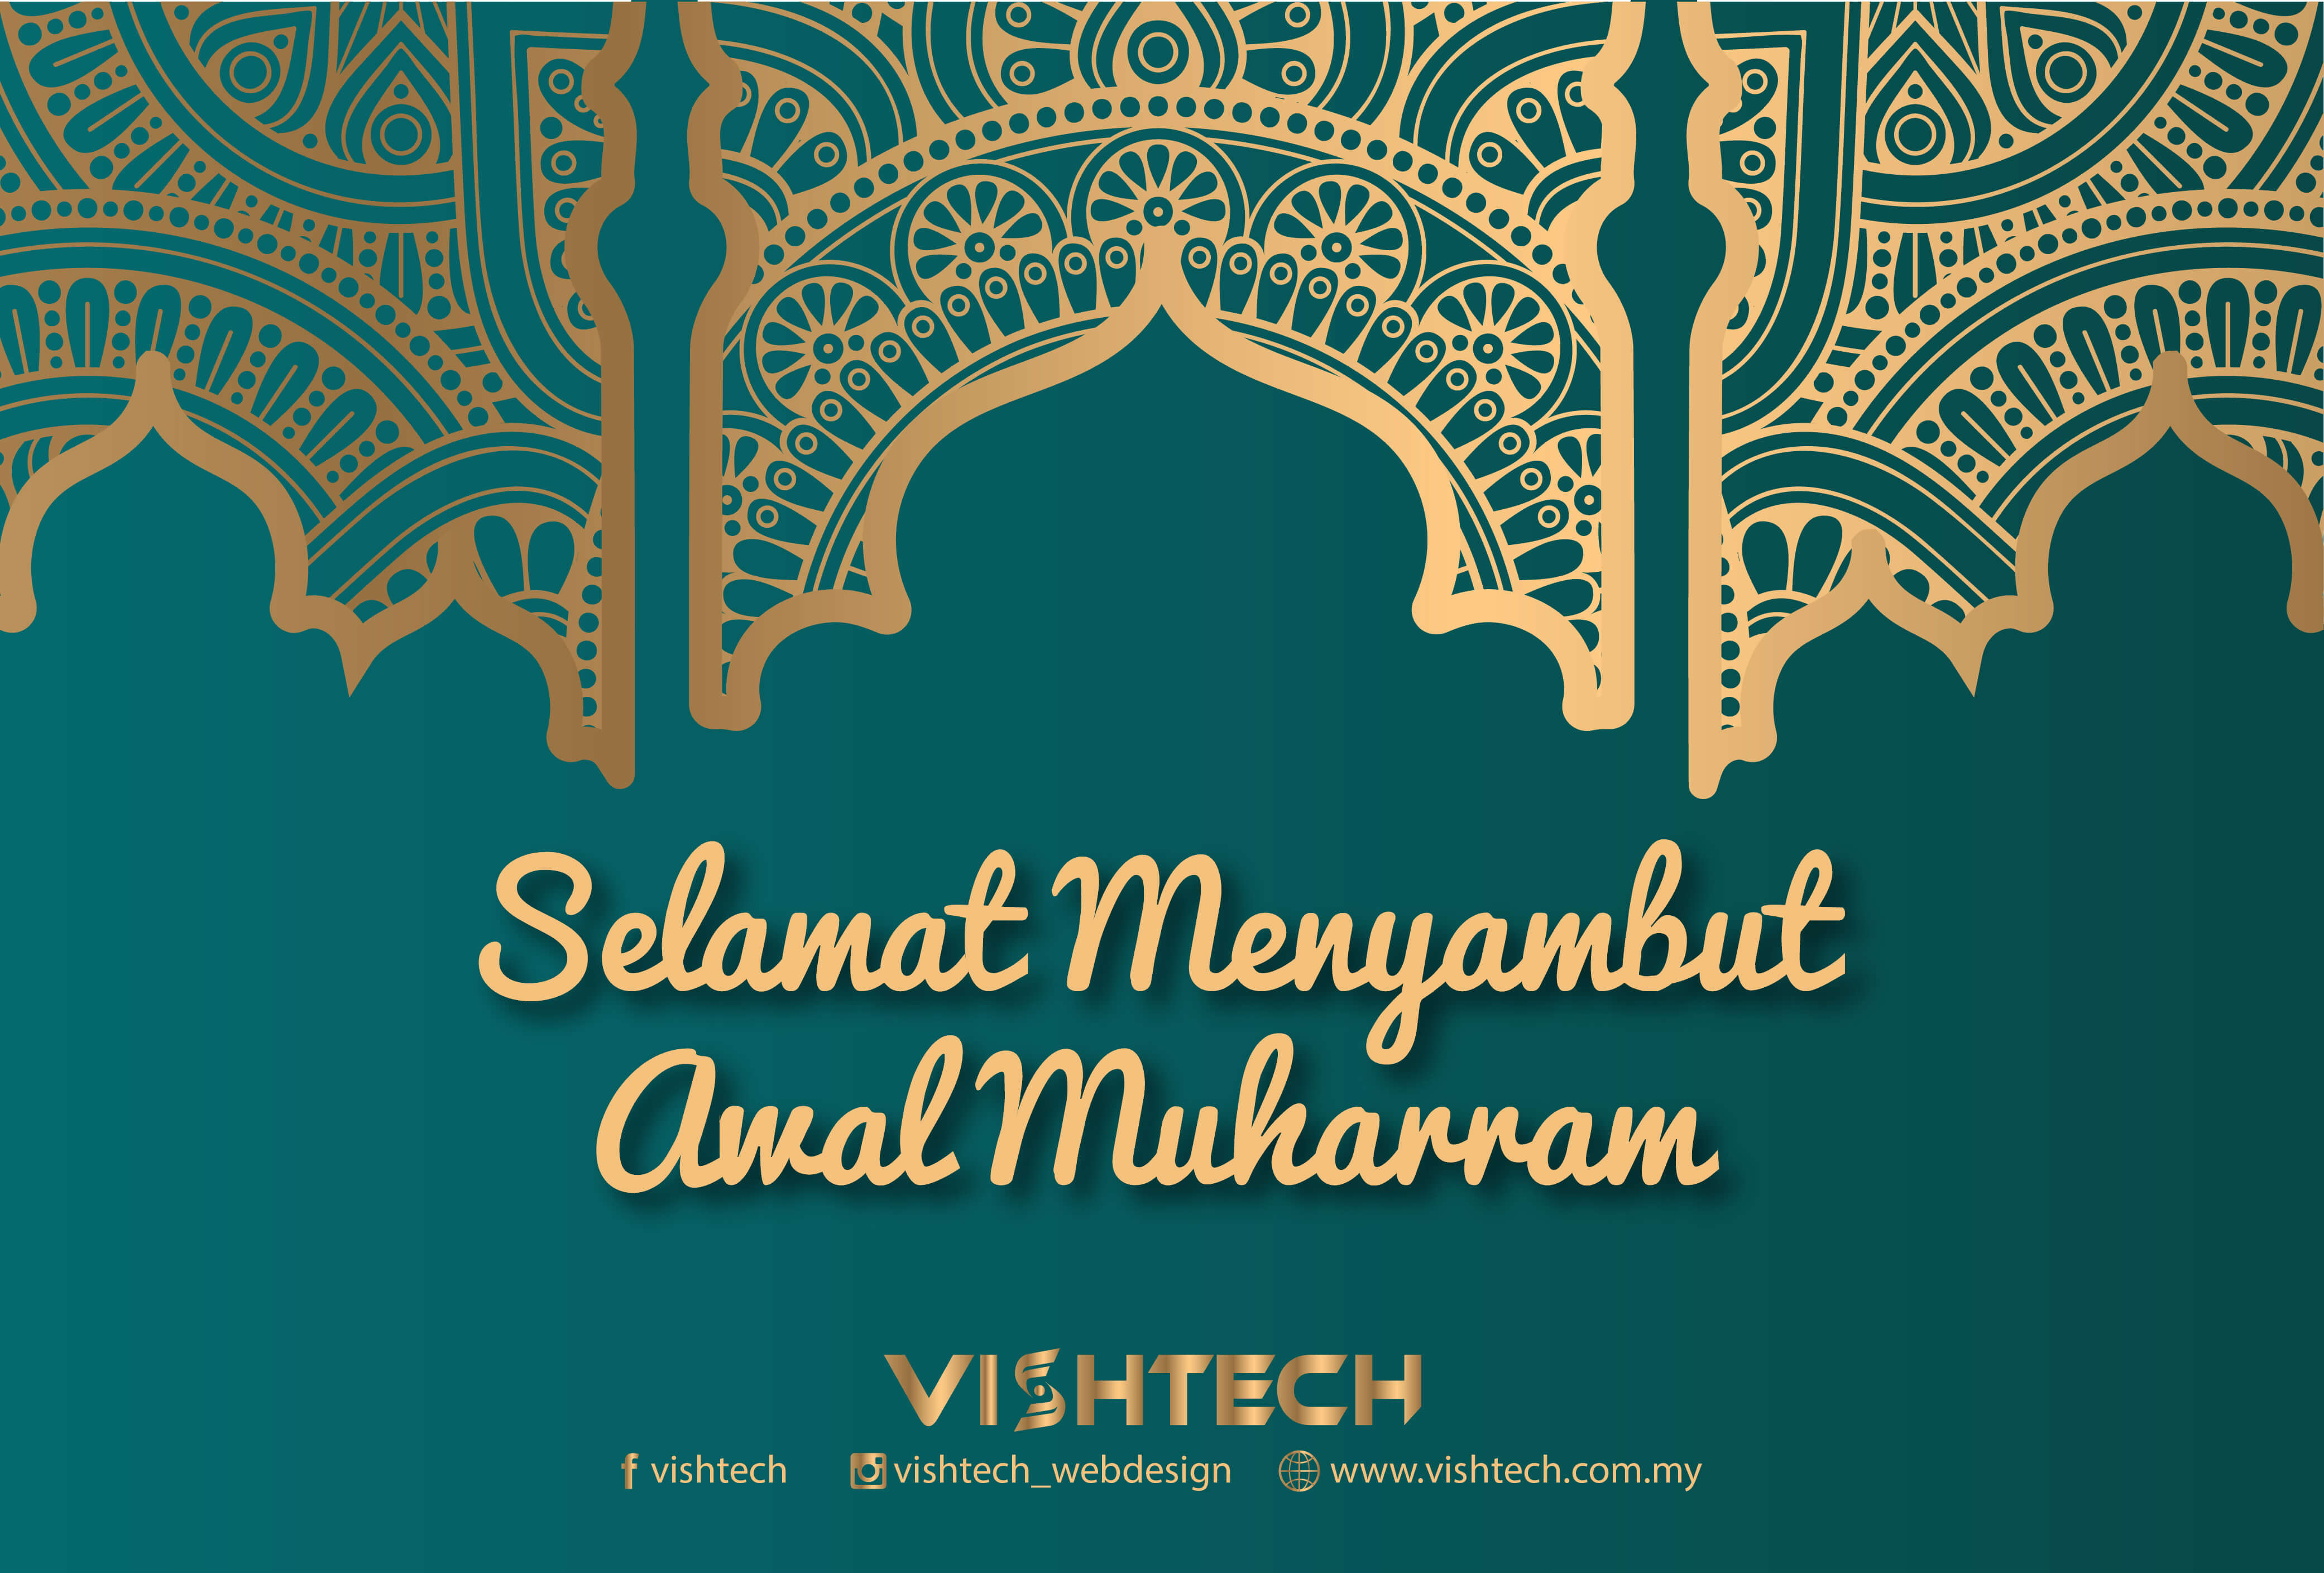 Awal Muharram 2021 Wishes Awal Muharram in Malaysia in 2021 Office